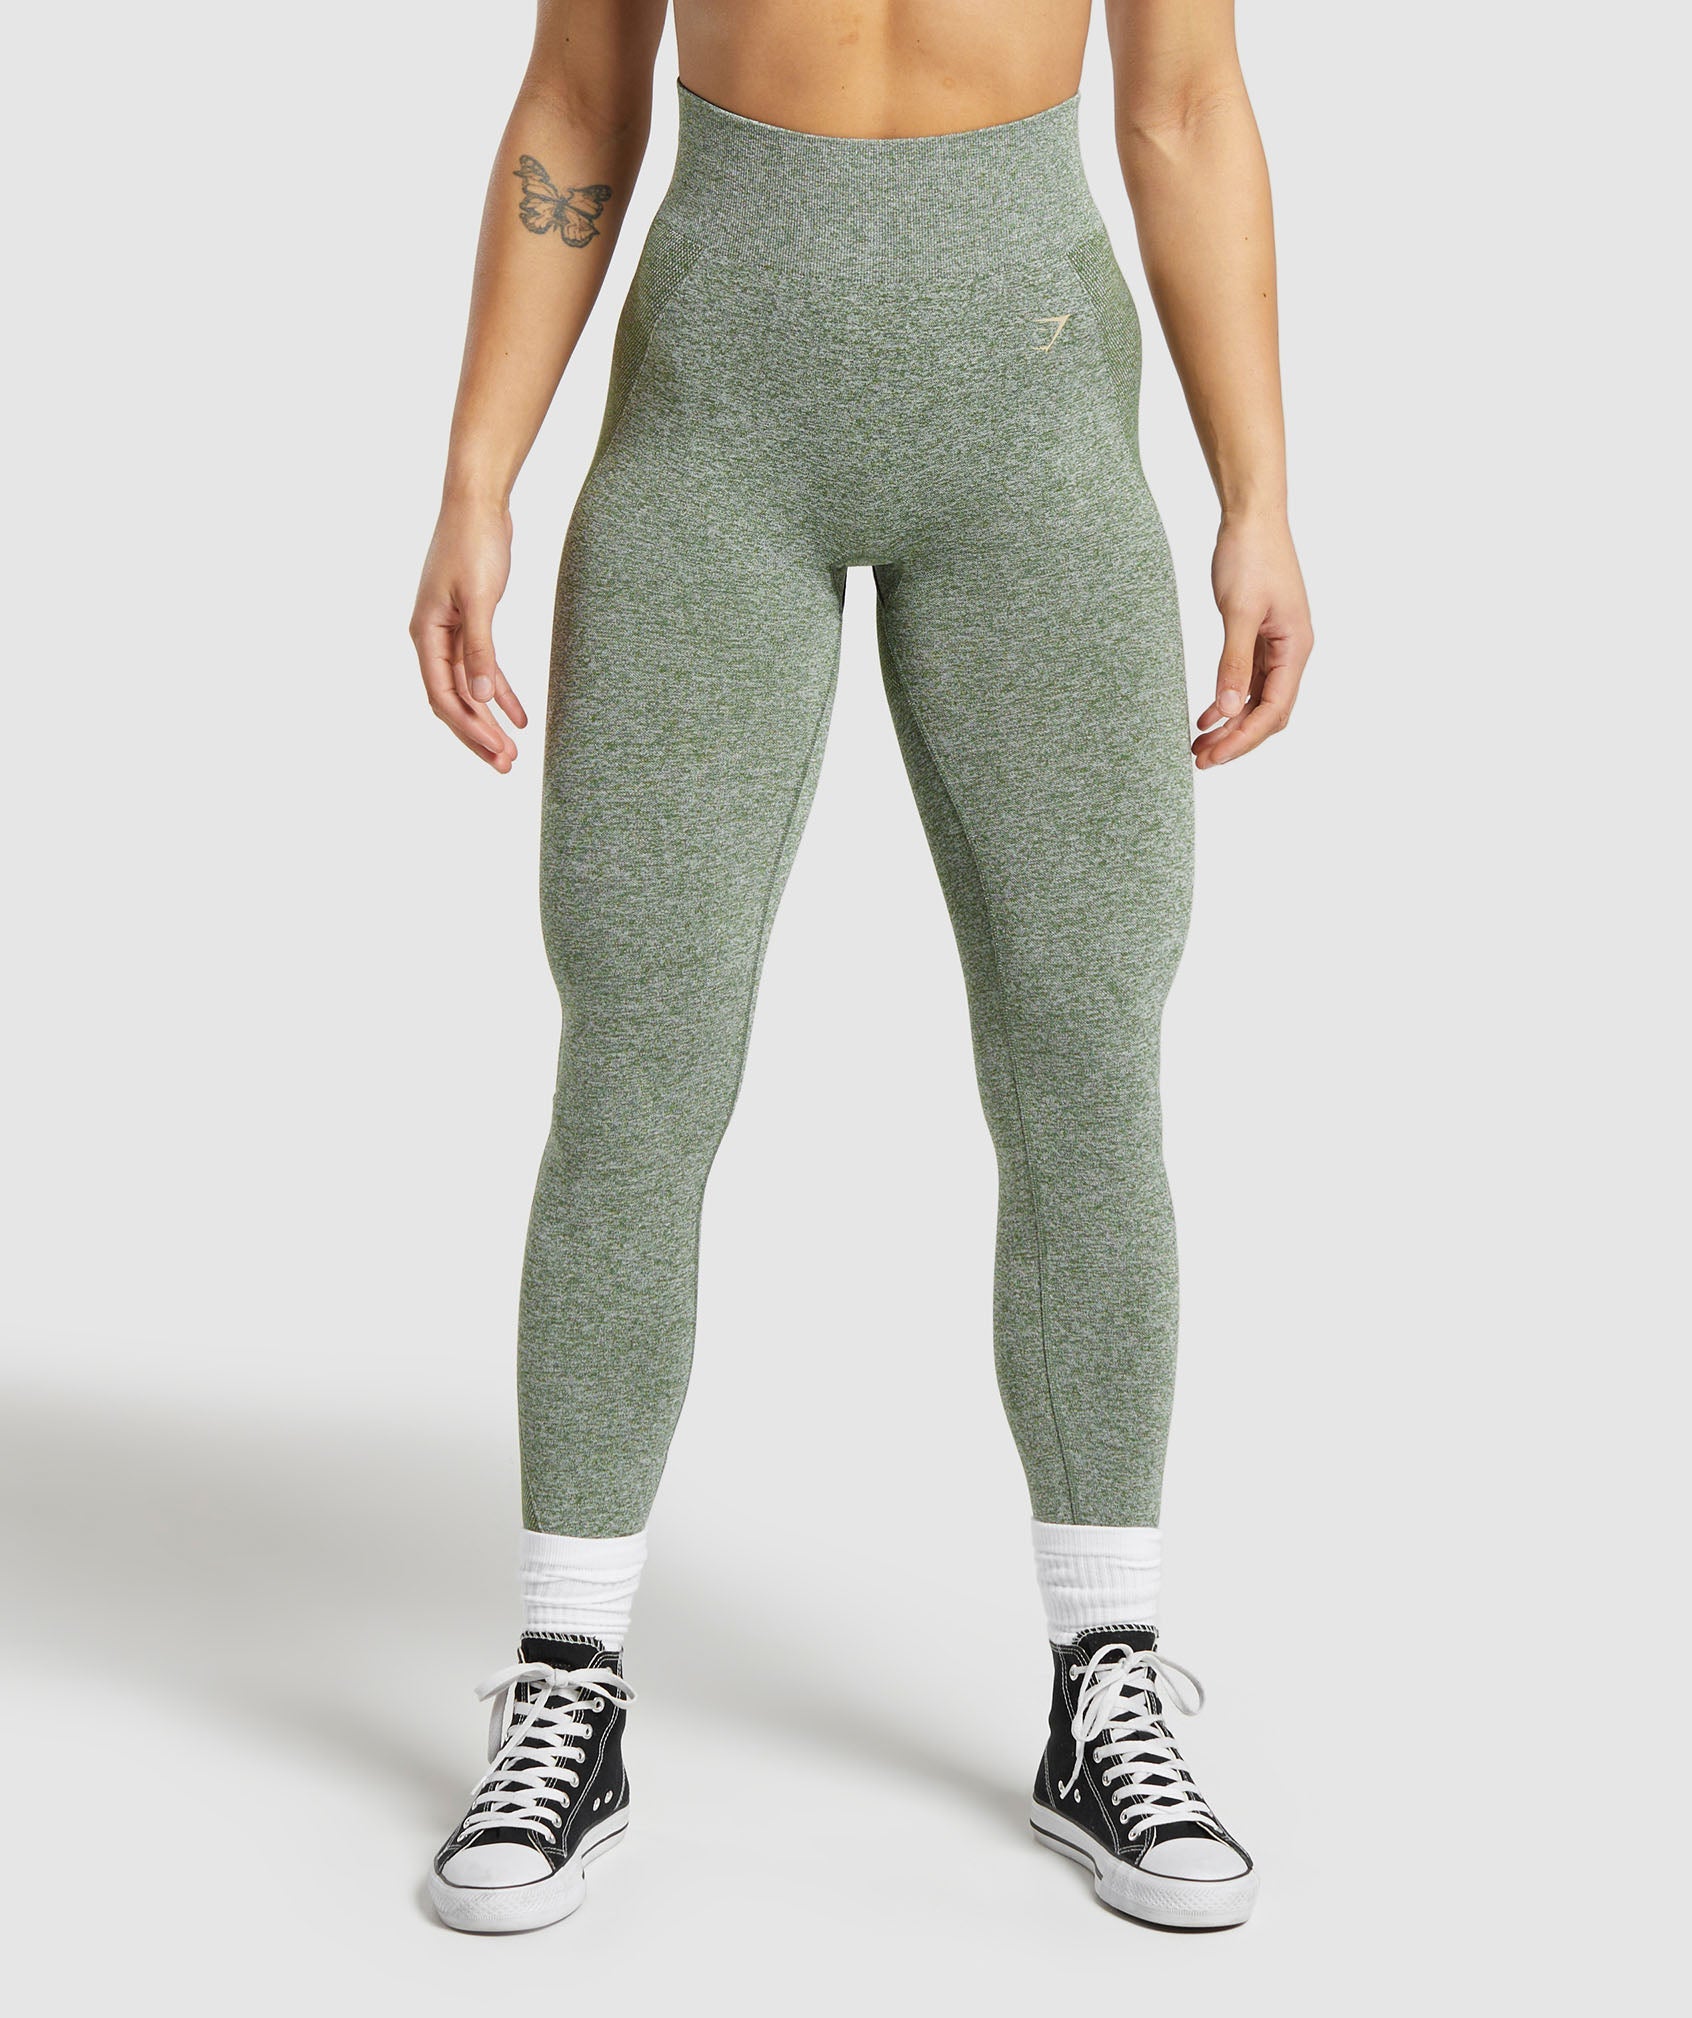 Gymshark Flex High Waisted Leggings Black Size M - $35 (30% Off Retail) -  From Jaime